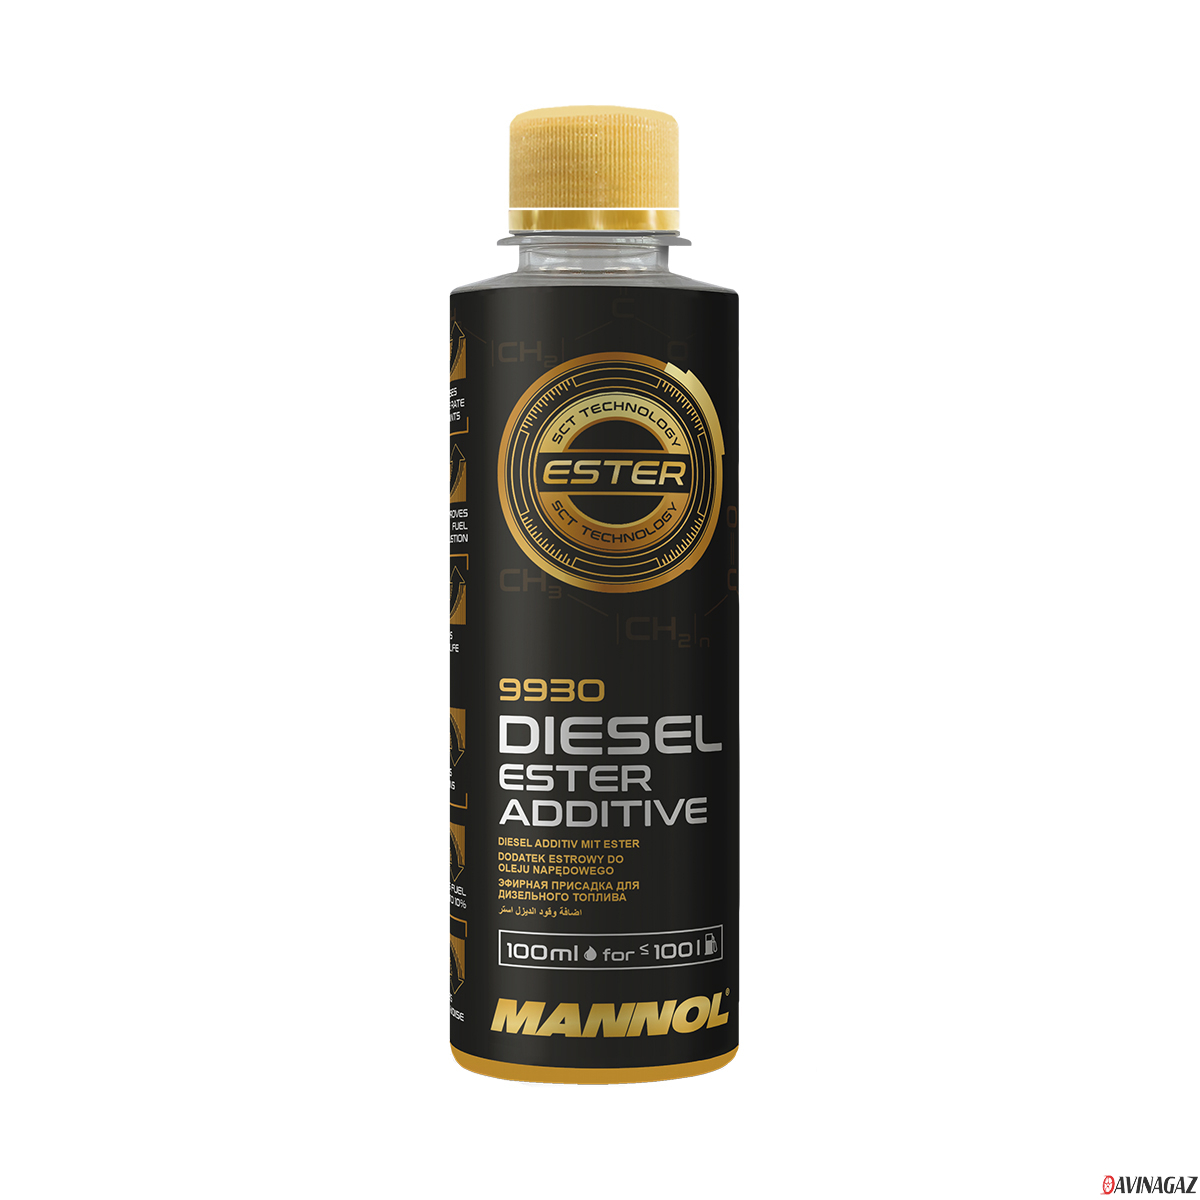 Противоизносная присадка для дизельных двигателей - MANNOL Diesel Ester Additive, 100мл